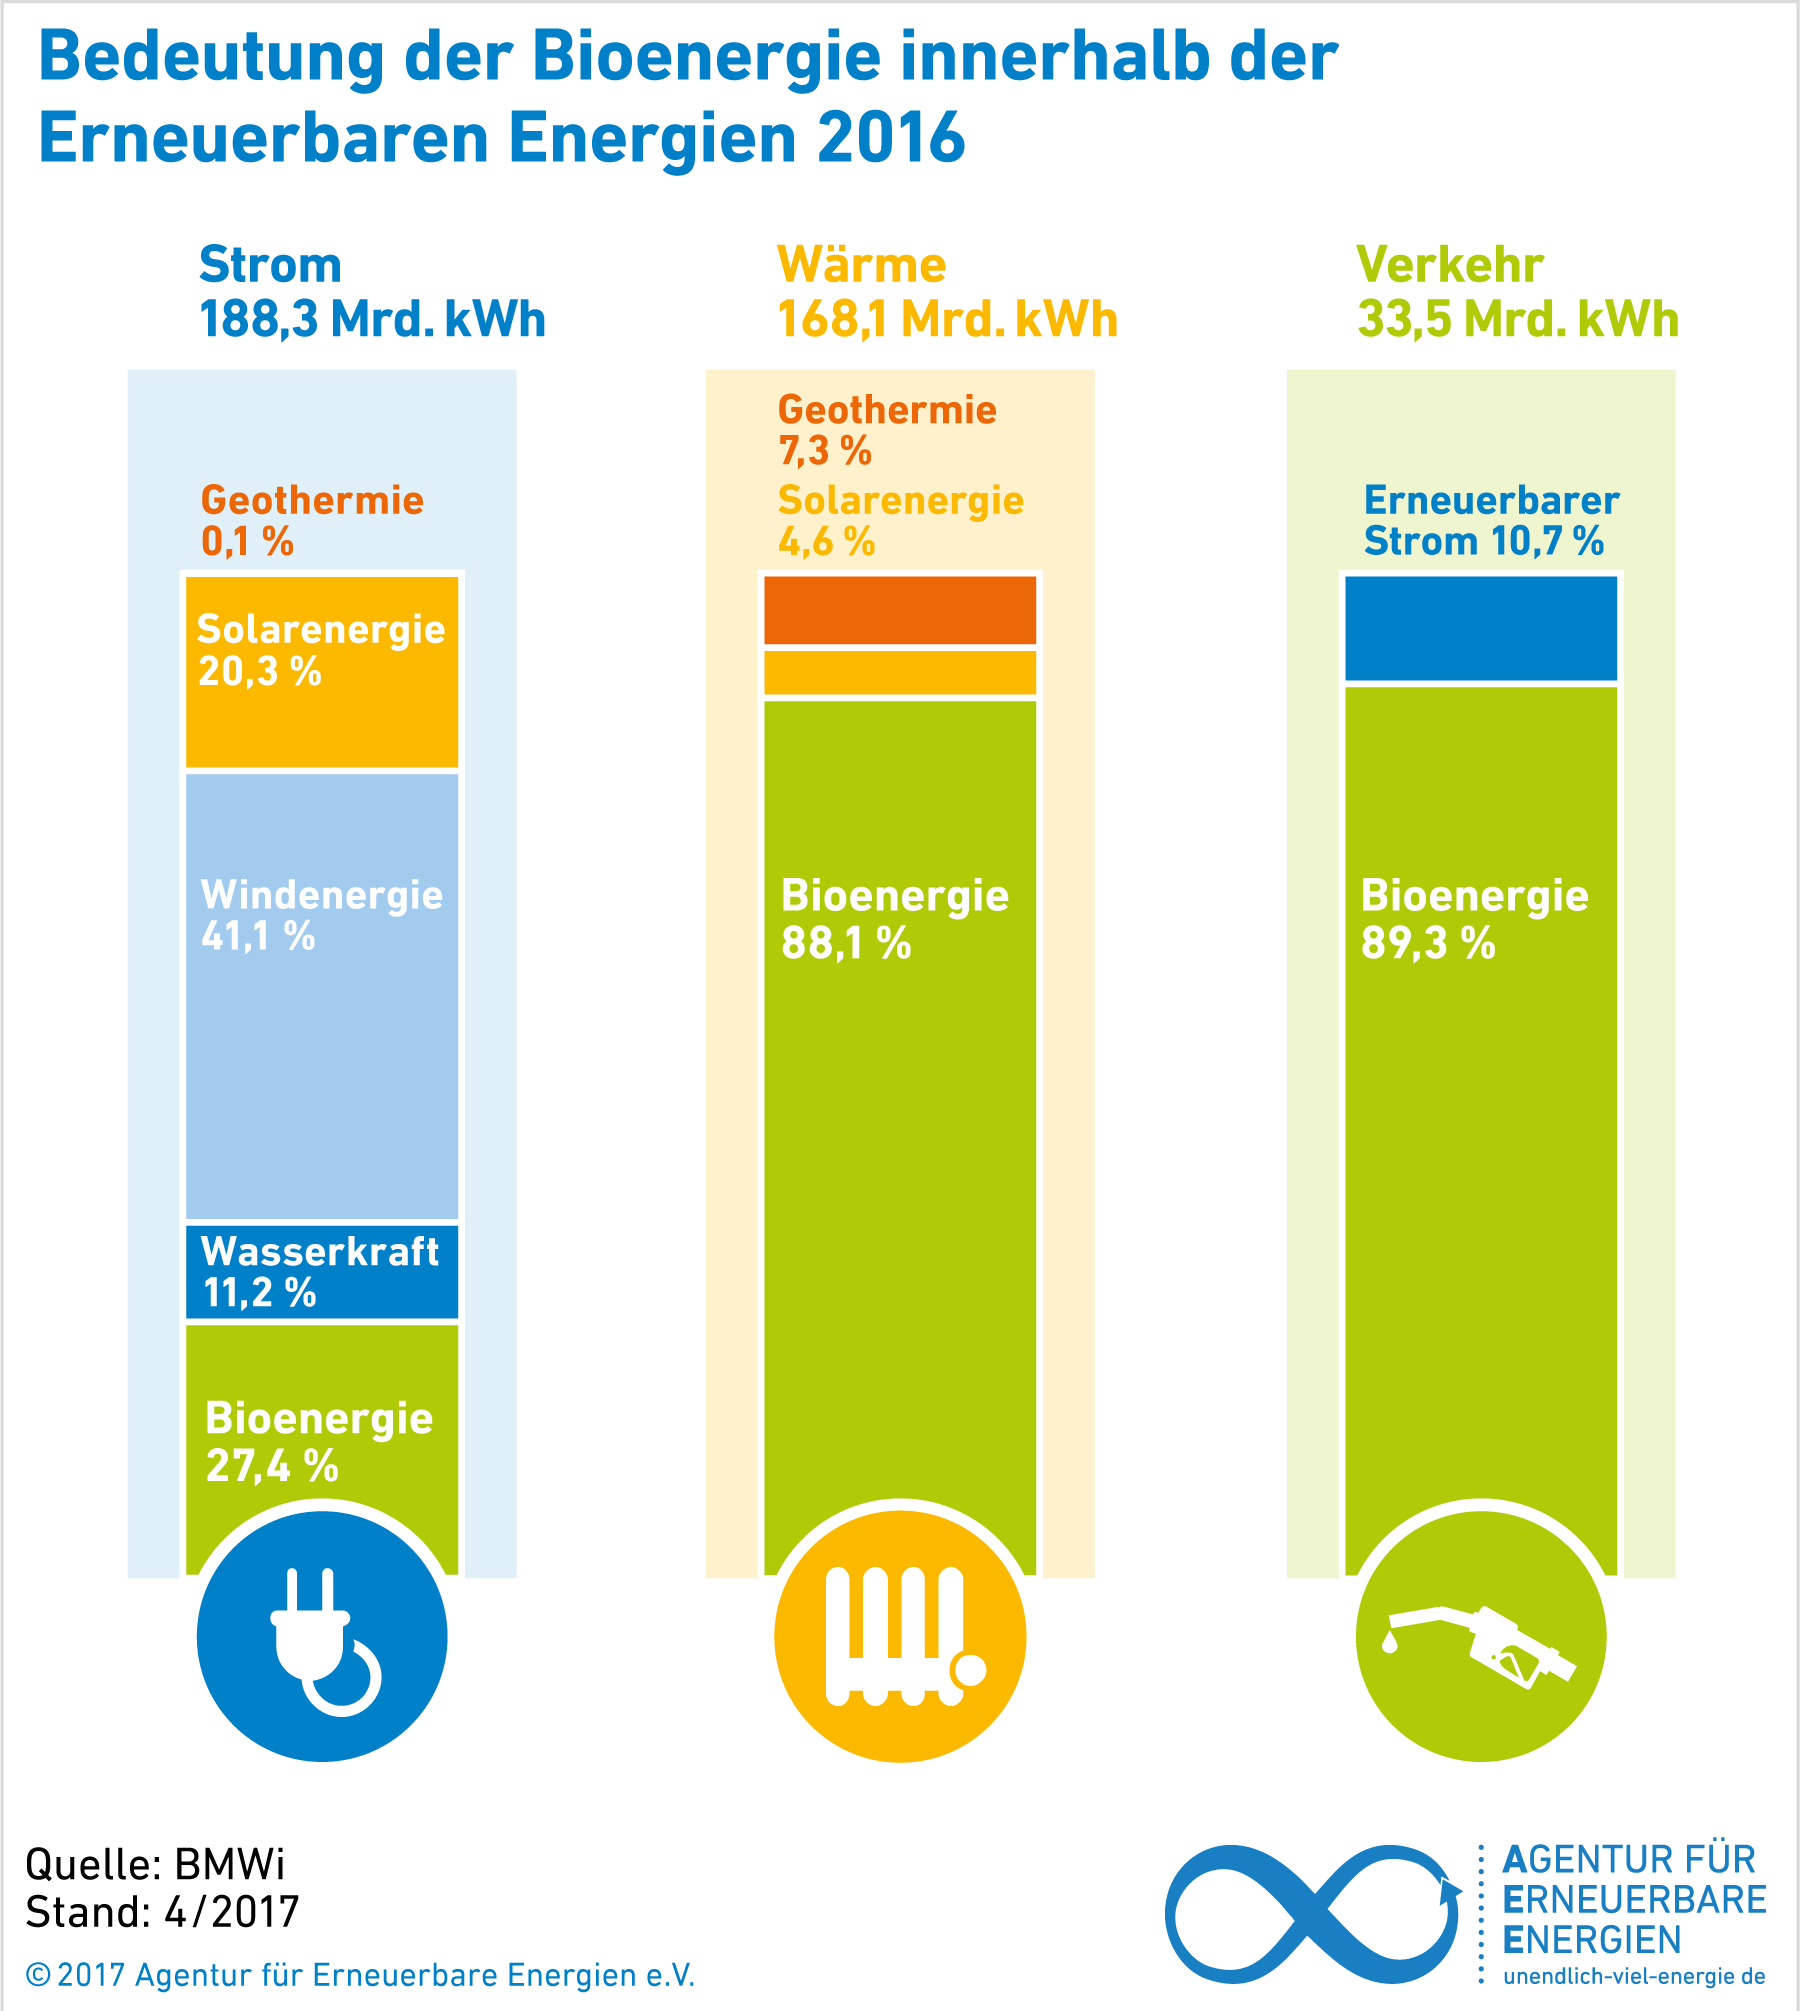 AEE_Bedeutung_Bioenergie_innerhalb_Erneuerbarer2016_Apr17